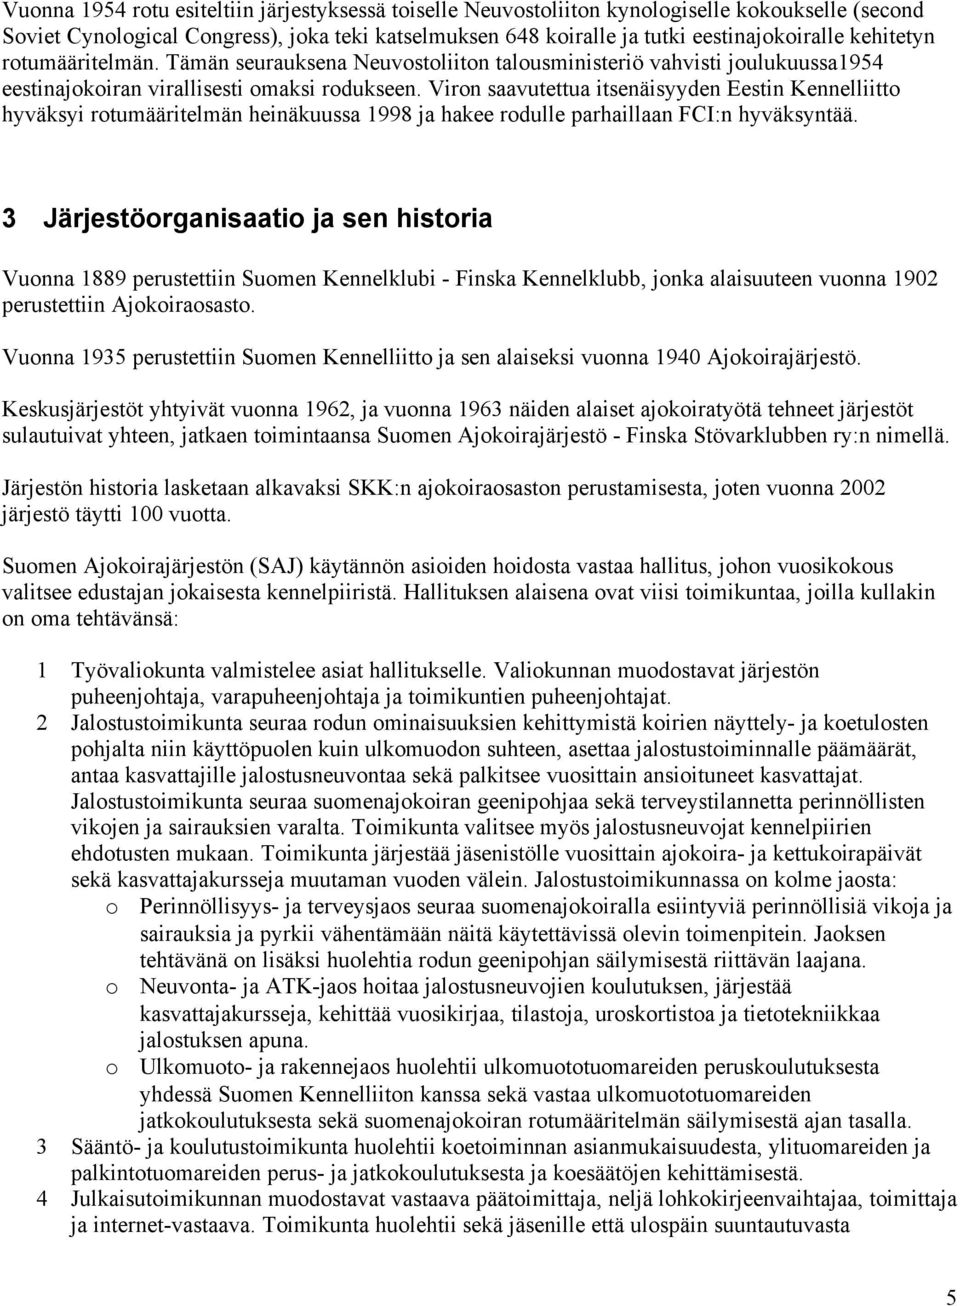 Viron saavutettua itsenäisyyden Eestin Kennelliitto hyväksyi rotumääritelmän heinäkuussa 1998 ja hakee rodulle parhaillaan FCI:n hyväksyntää.